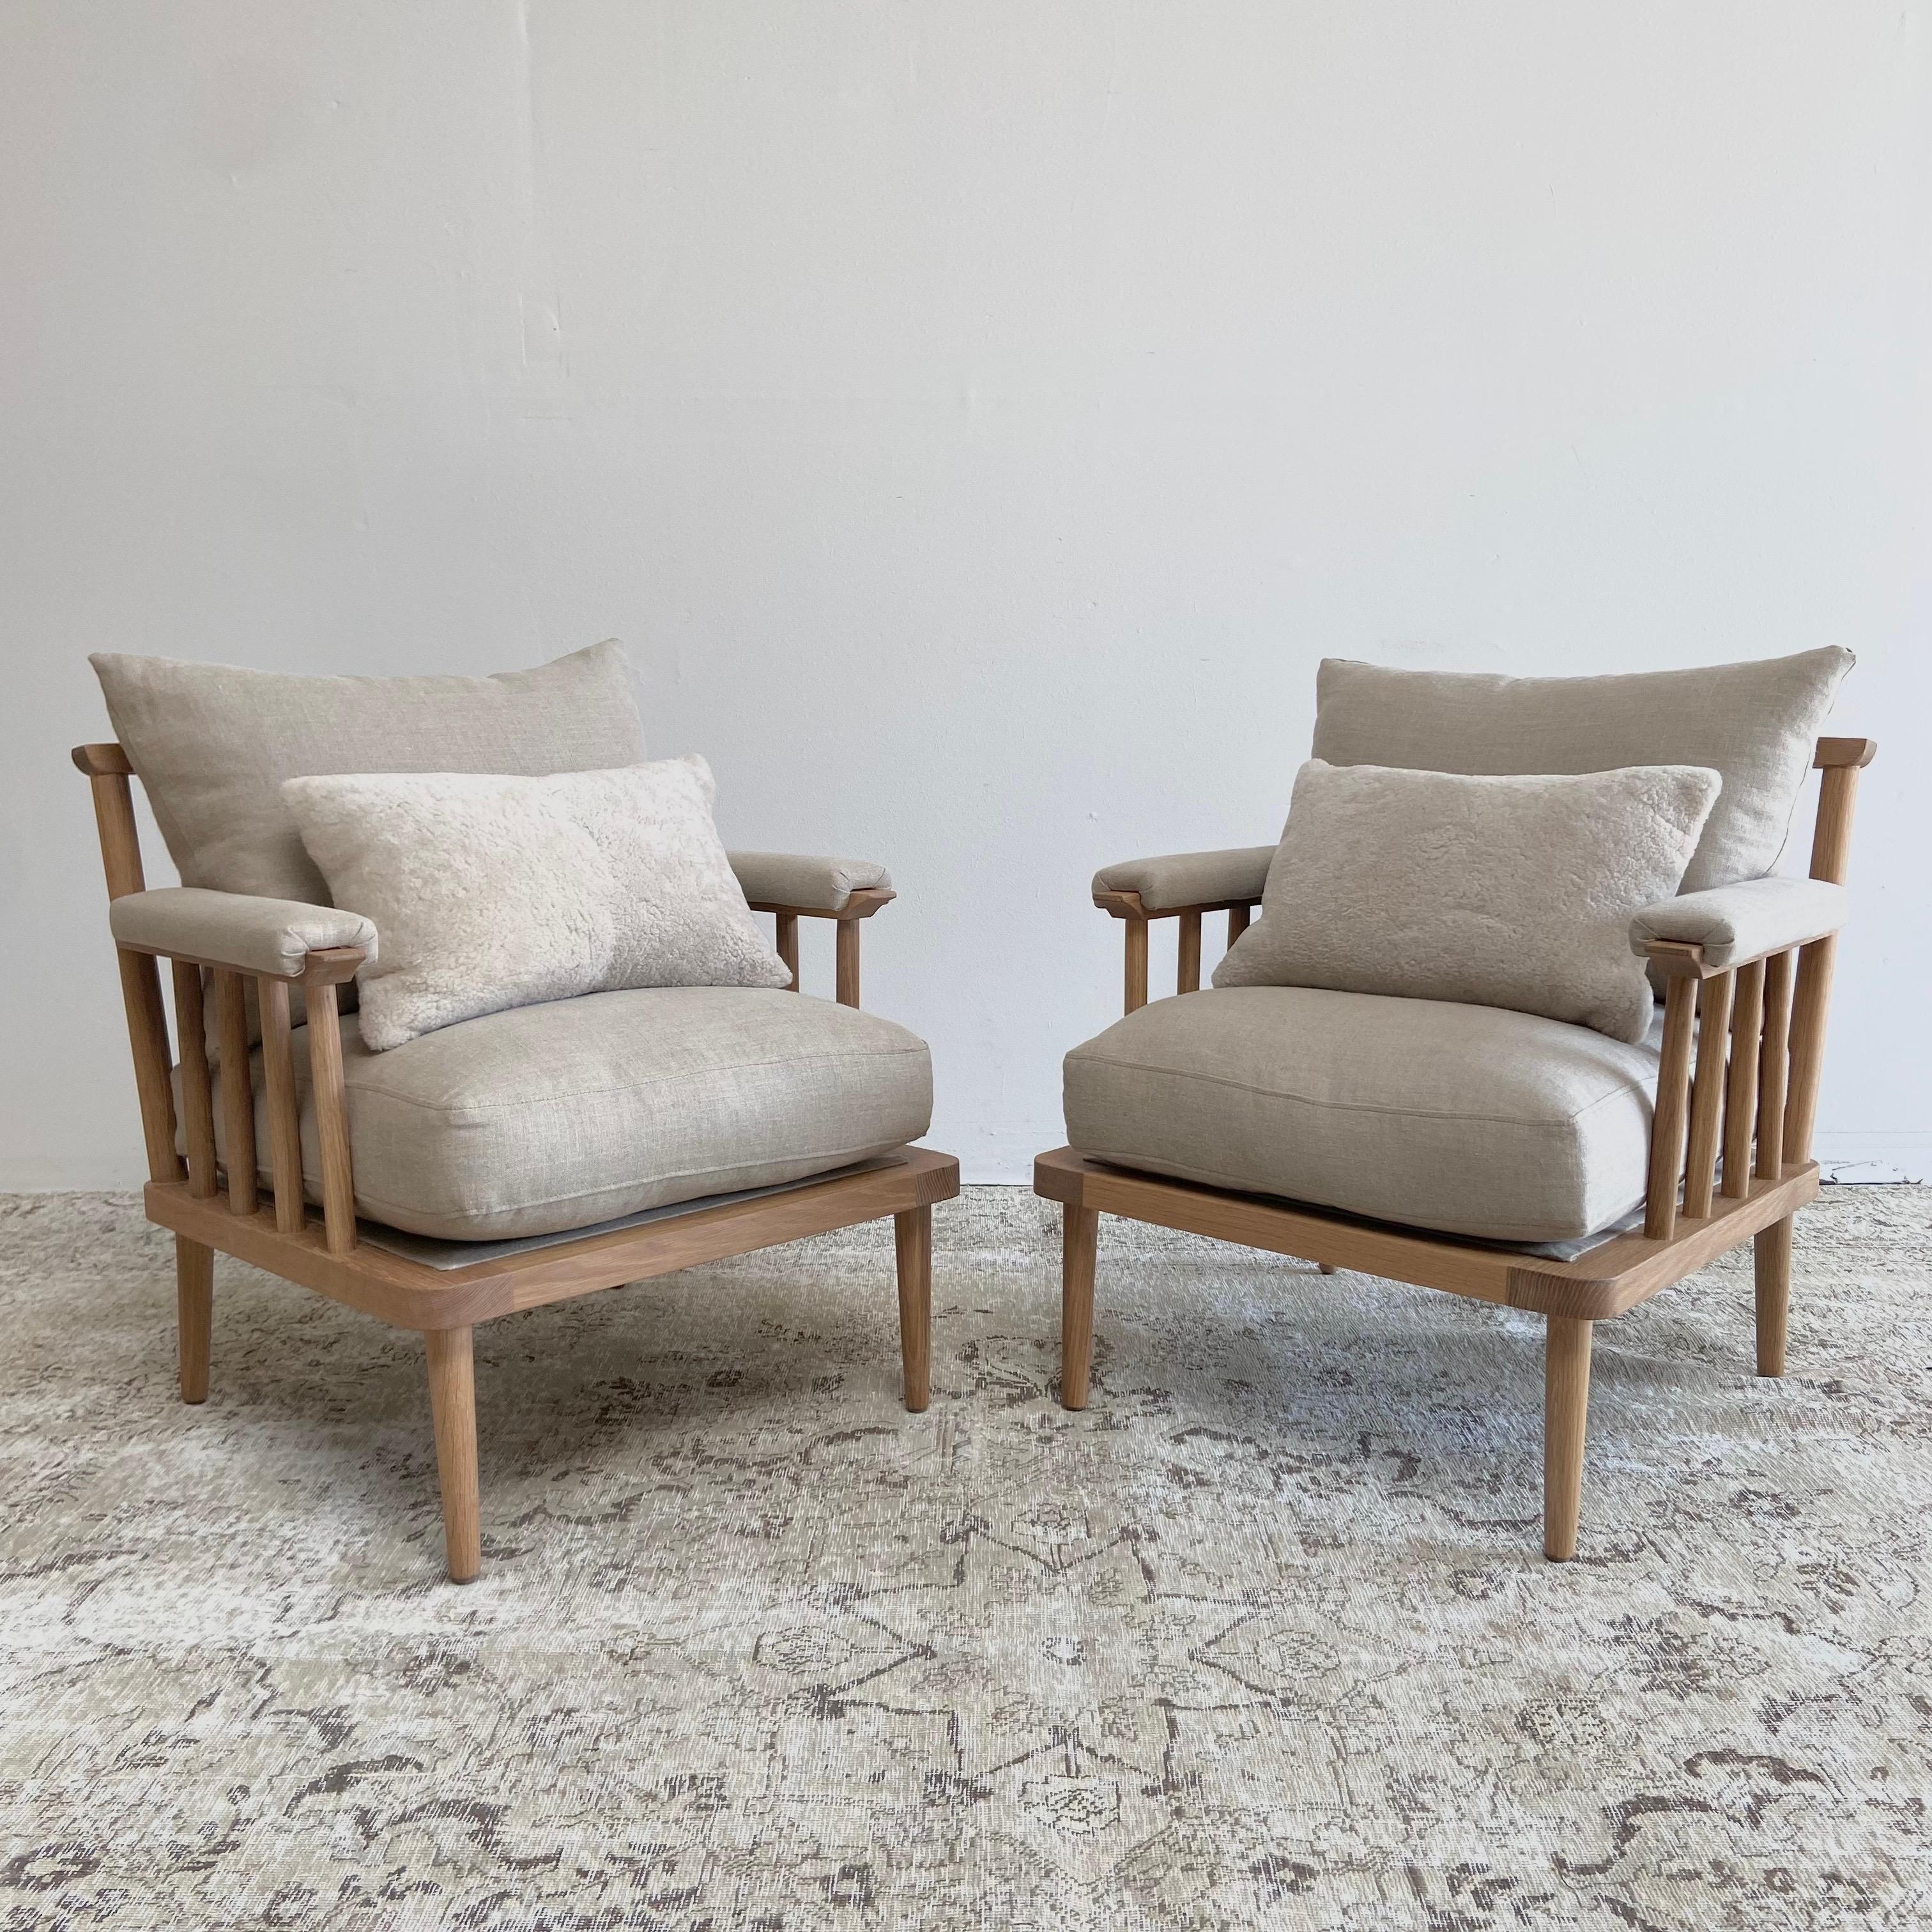 Notre chaise en chêne blanc personnalisée a une finition naturelle que nous appelons Mist 5. Celle-ci met en valeur le chêne blanc en lui donnant un subtil aspect plus clair. Nous le proposons dans toutes nos finitions et tissus personnalisés.